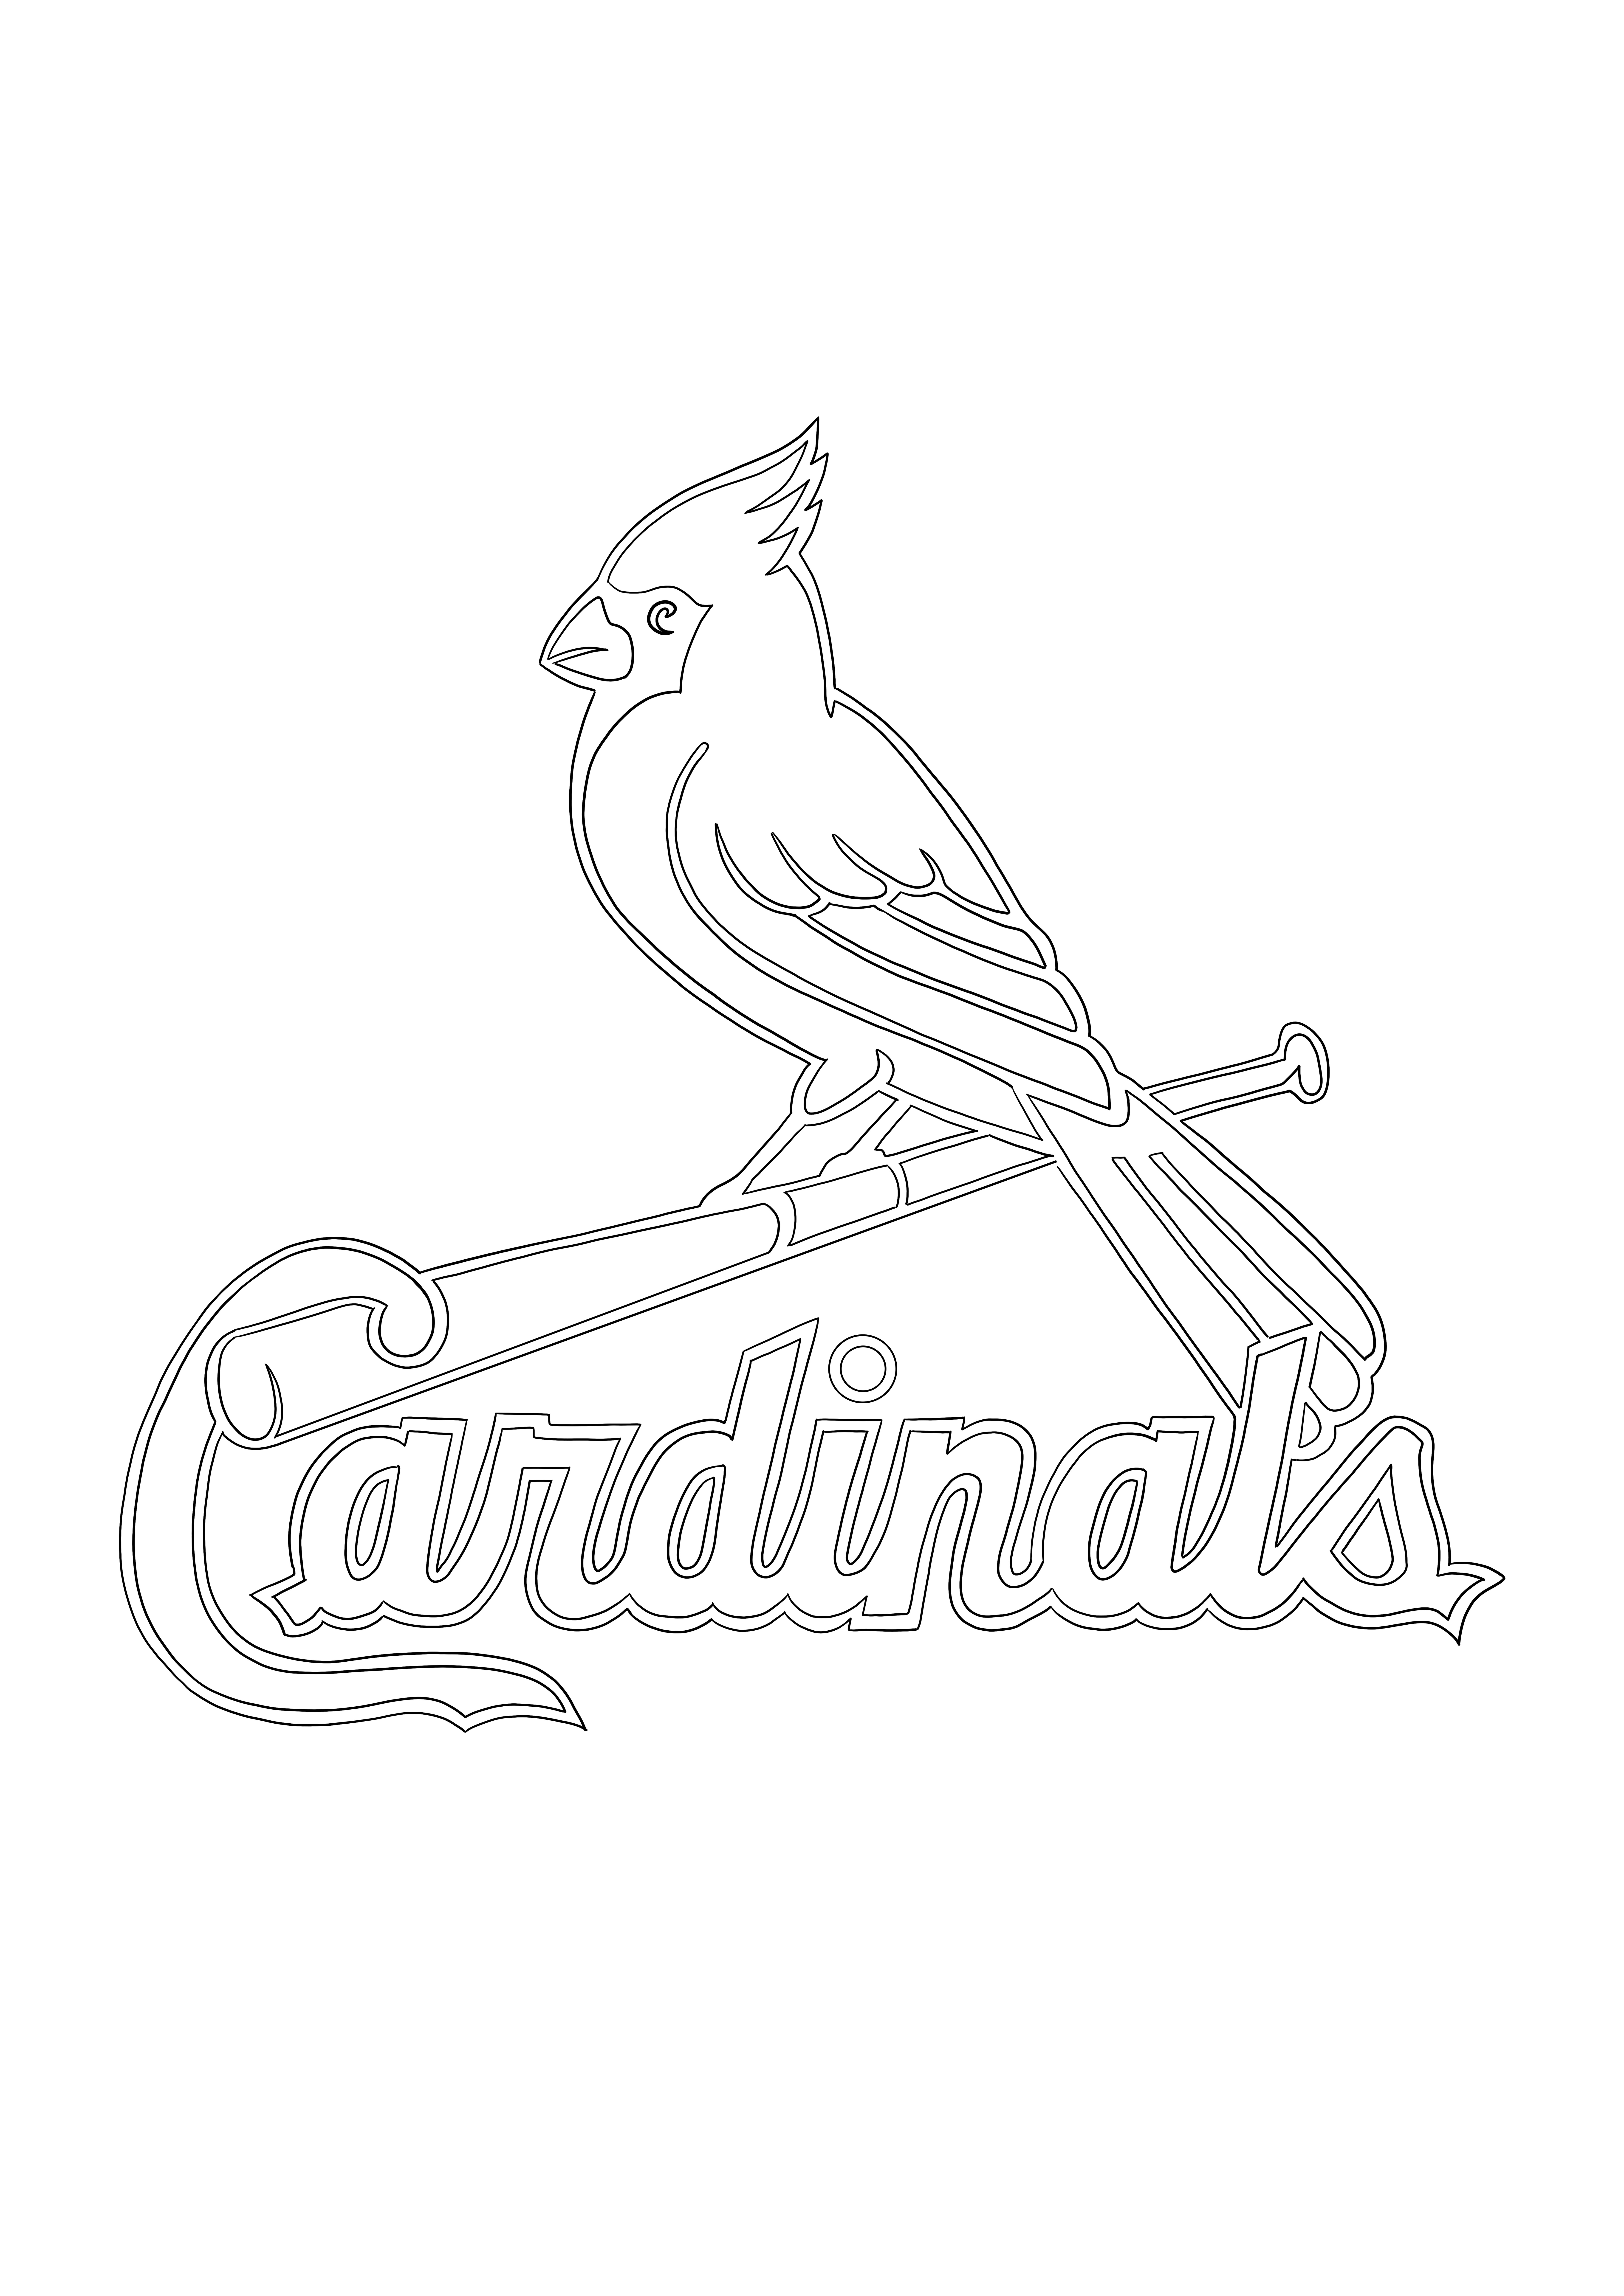 St. Louis Cardinals-Logo zum späteren Speichern oder Herunterladen zum Ausmalen